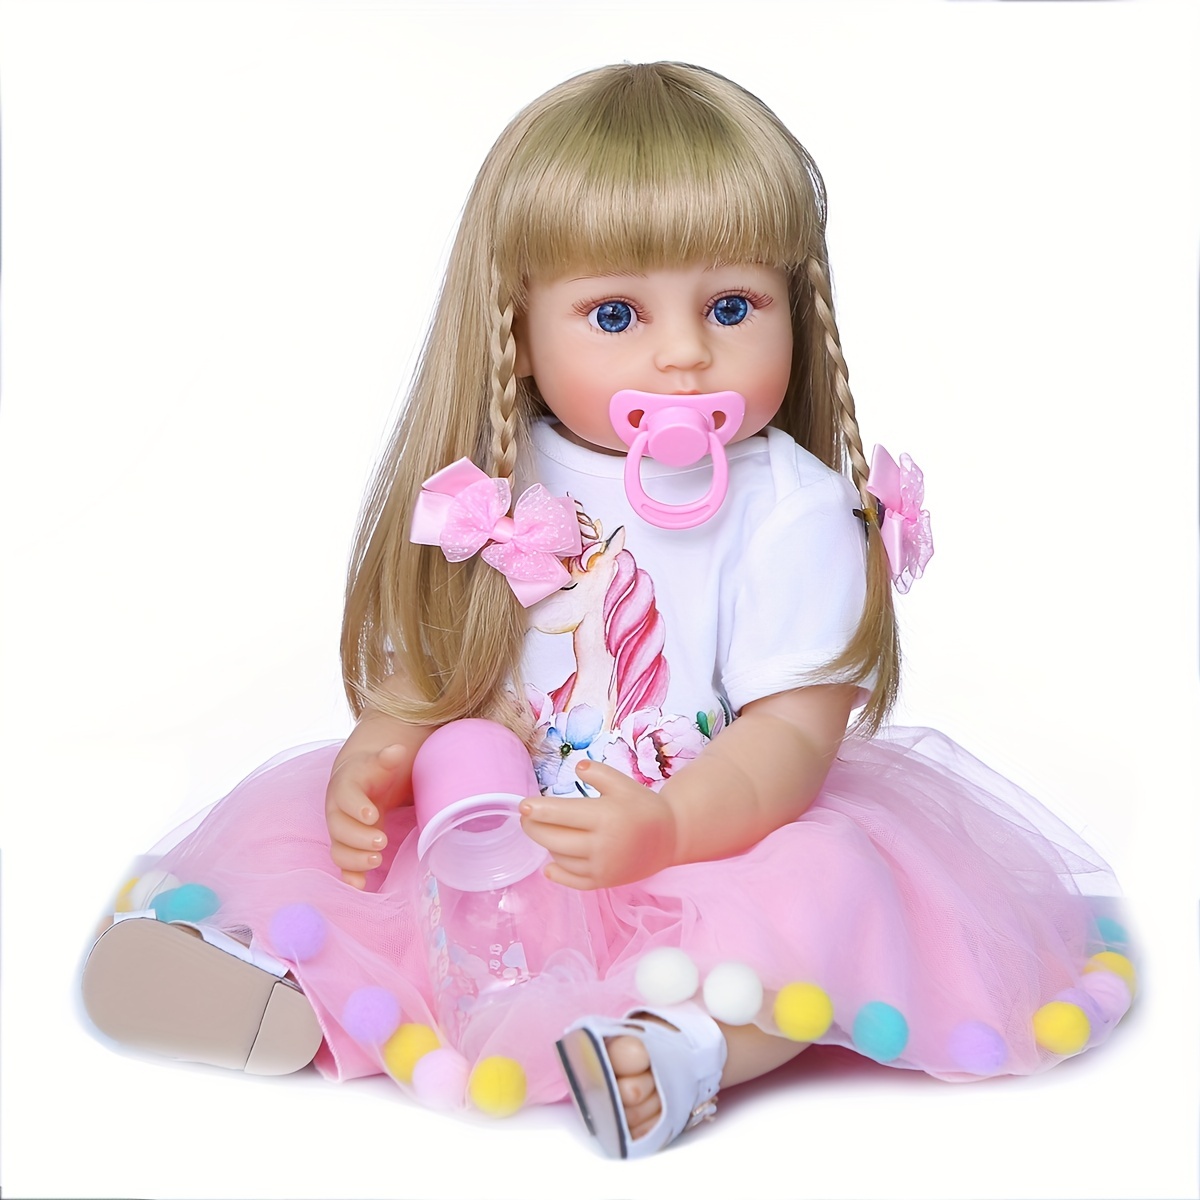 Npk, corpo inteiro original de 55cm, boneca de silicone reborn, bebê,  princesa, boneca de menina, toque macio real, brinquedo de banho, à prova  d'água - AliExpress